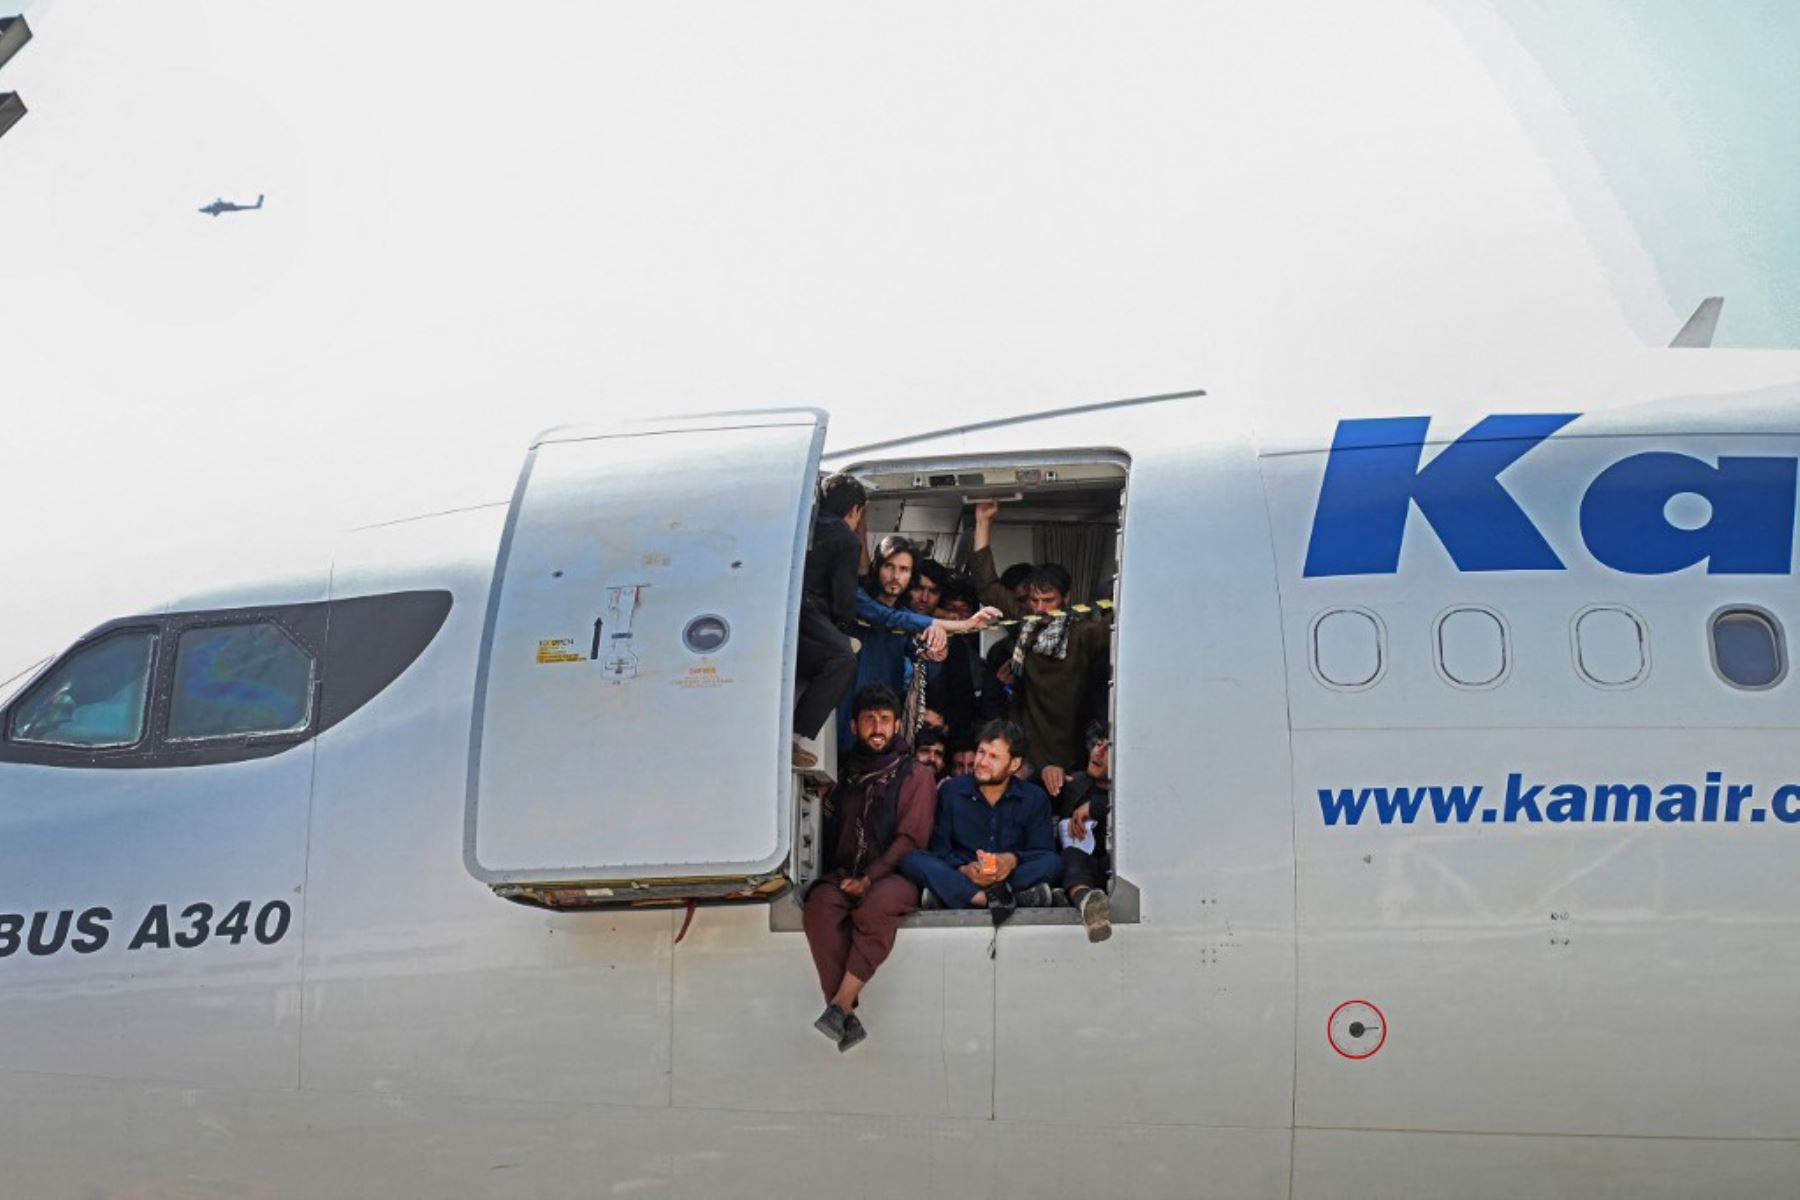 Afganos suben a un avión mientras esperan en el aeropuerto de Kabul  después del final de la guerra de 20 años de Afganistán, mientras miles de personas asaltaron el aeropuerto de la ciudad tratando de huir de la temida marca de línea dura del grupo.

Foto: AFP